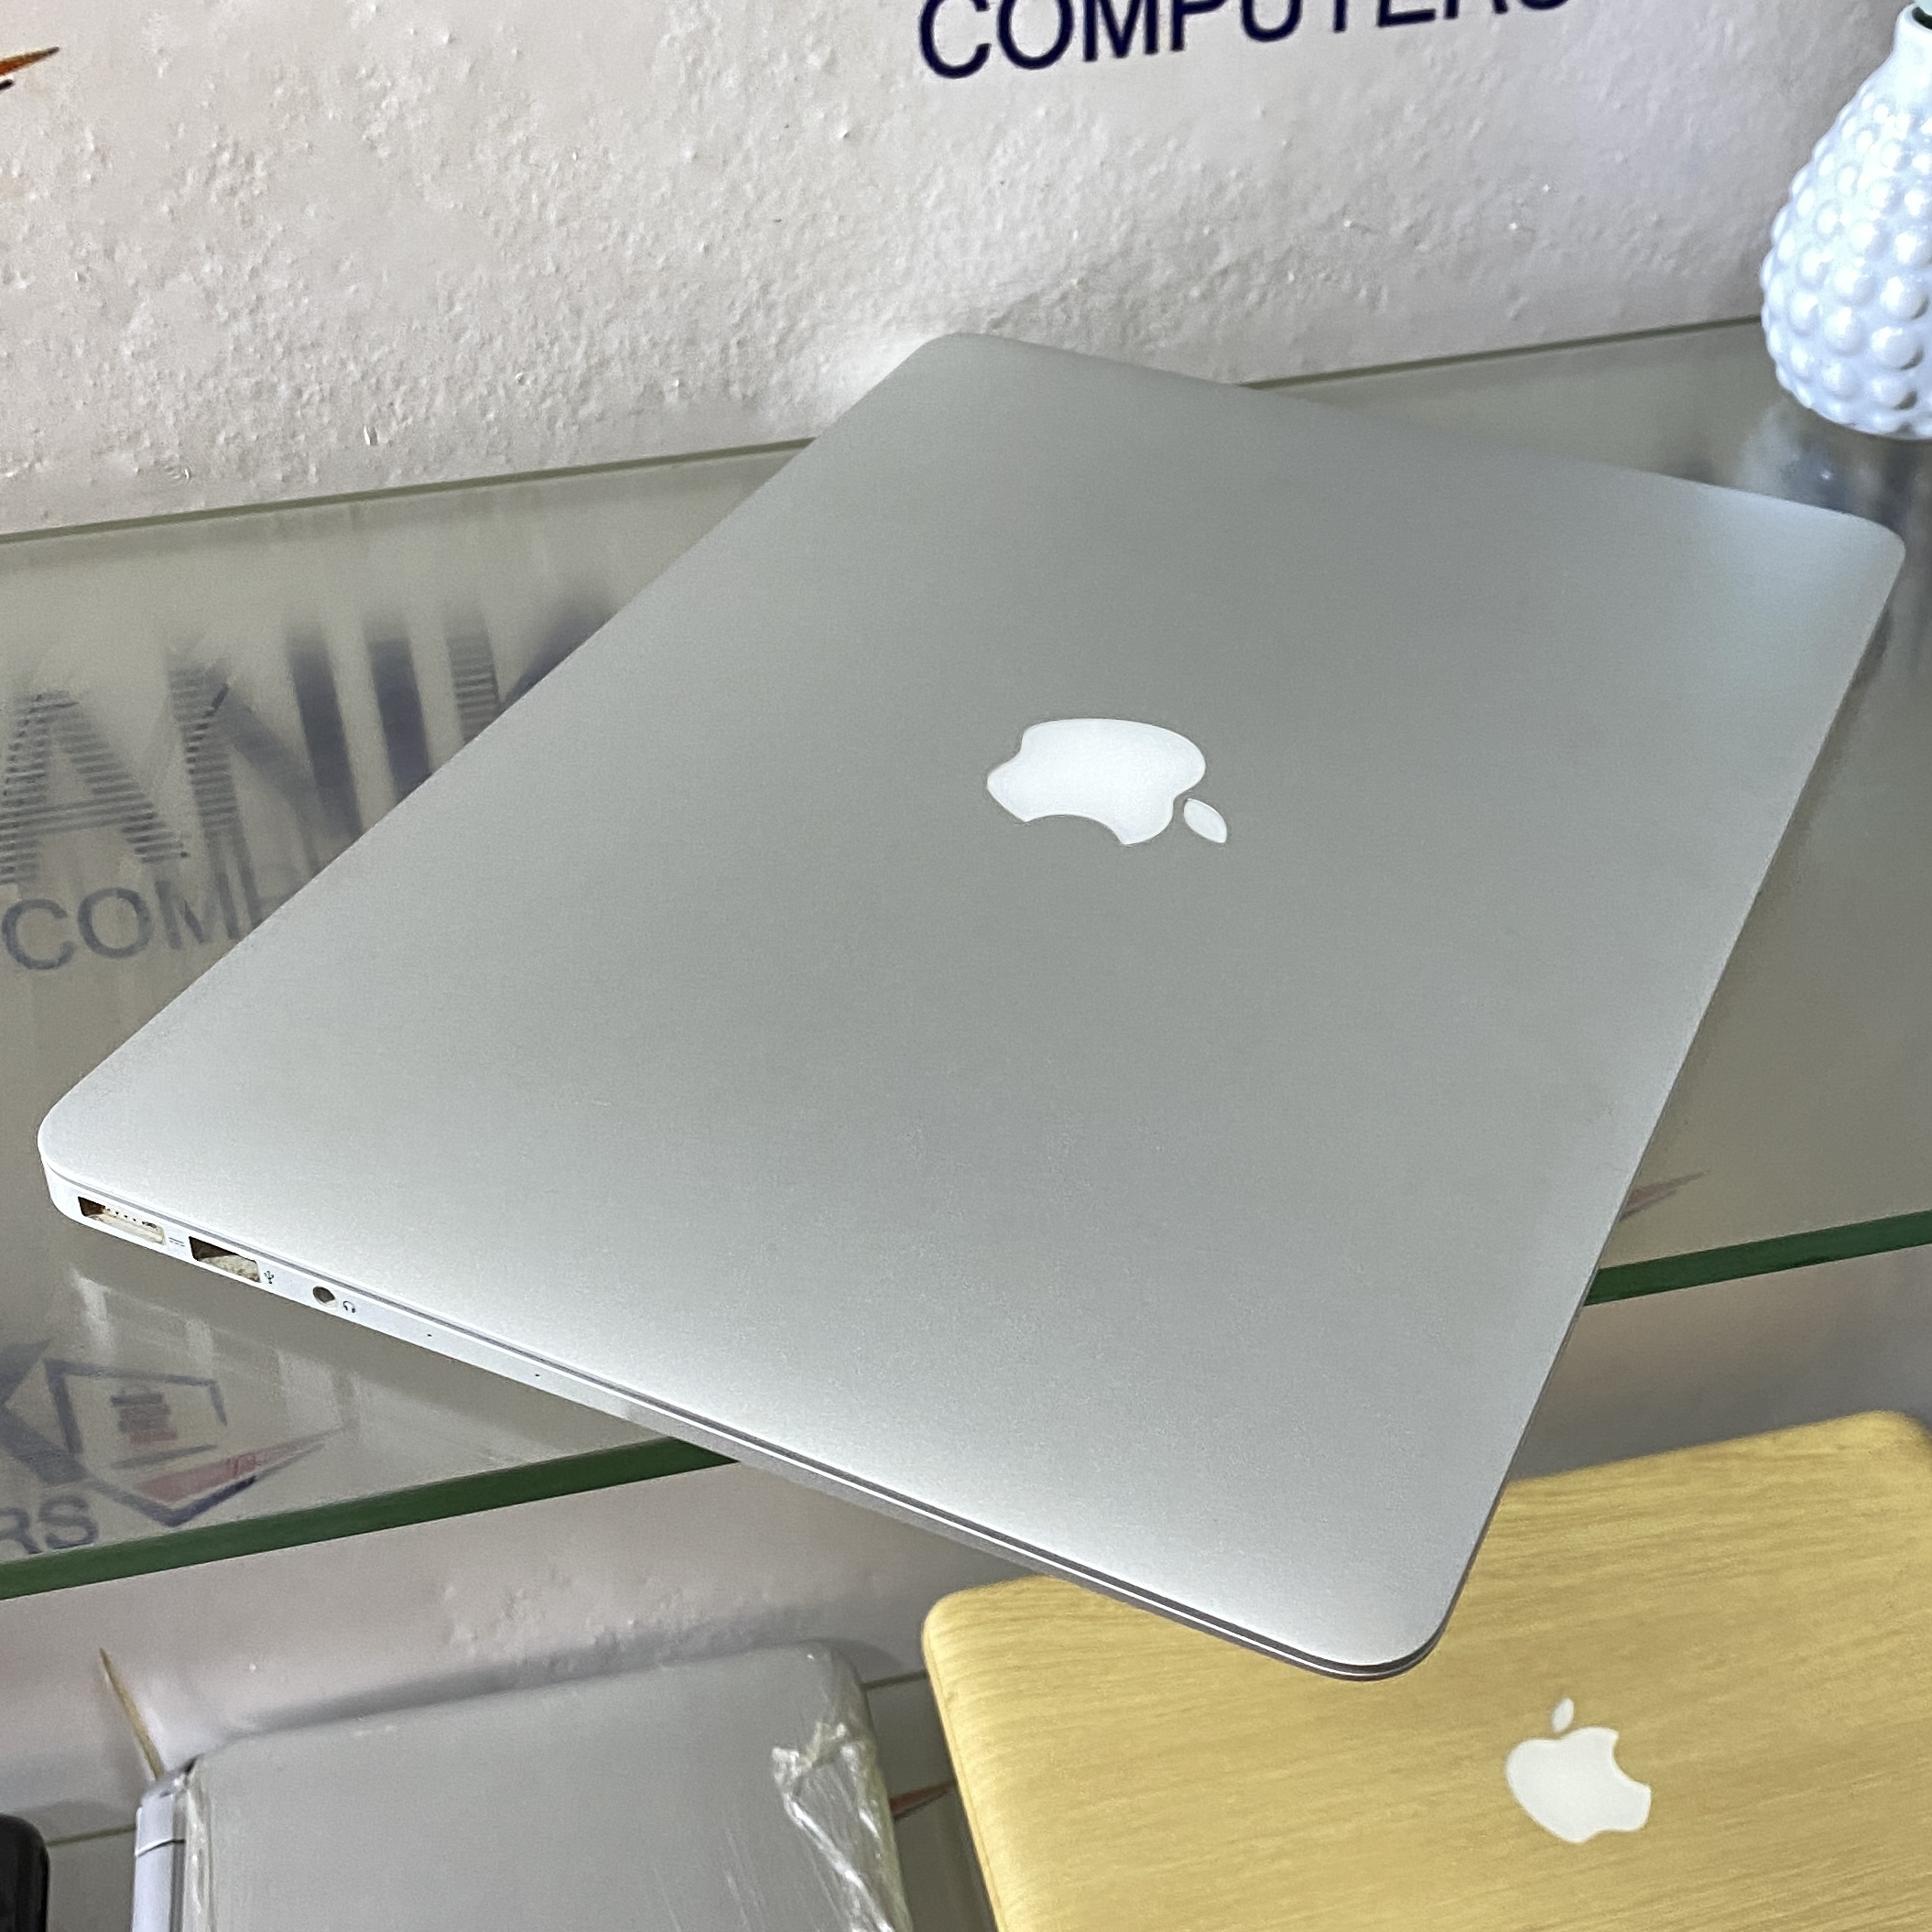 Apple MacBook Air - Intel Core i7 - 512gb SSD Storage - 8gb Ram - Keyboard  Light